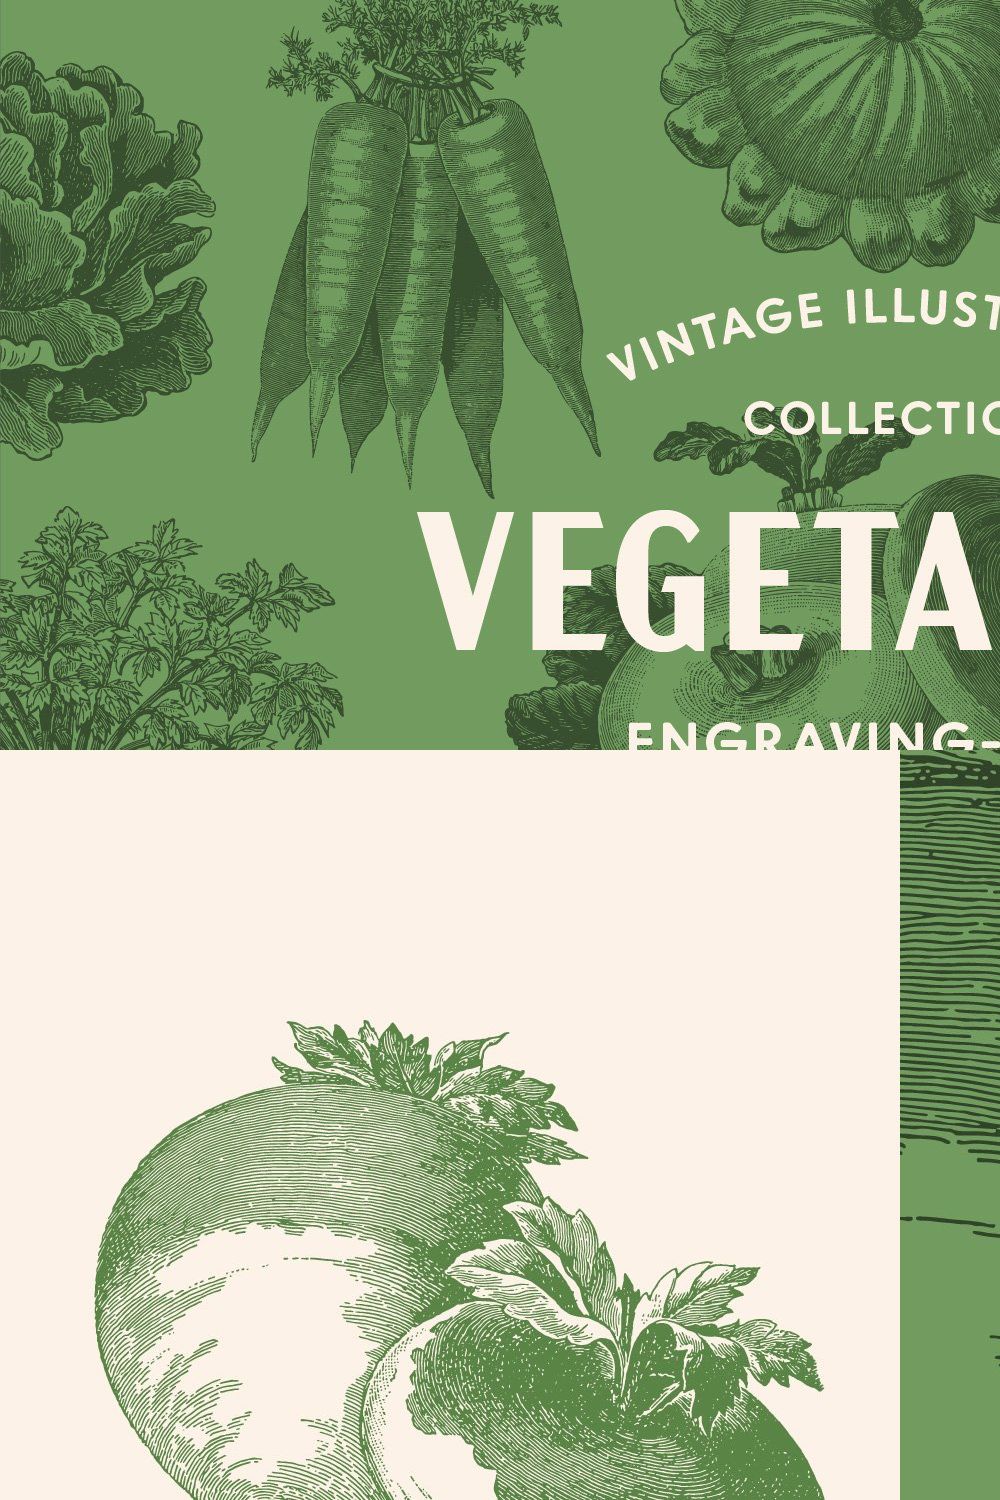 220 Vintage Vegetable Illustrations pinterest preview image.